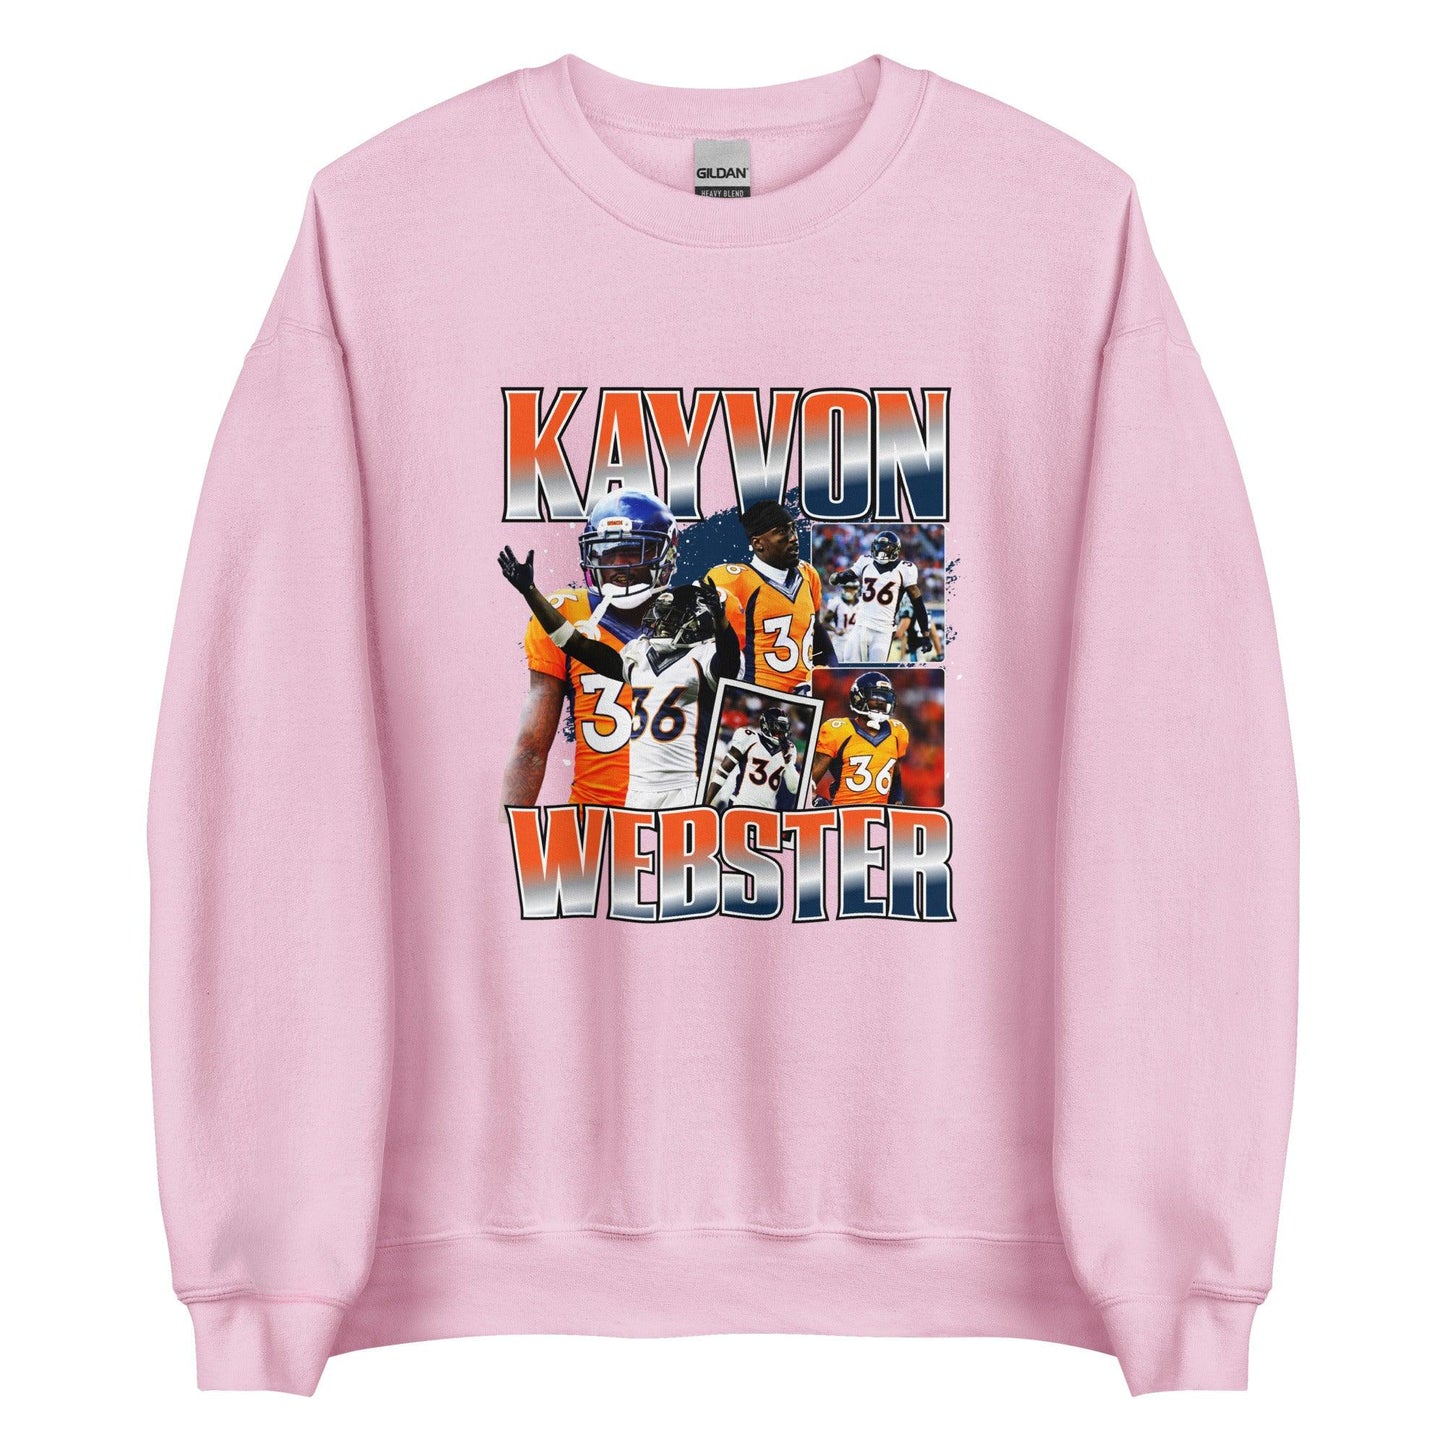 Kayvon Webster "Vintage" Sweatshirt - Fan Arch